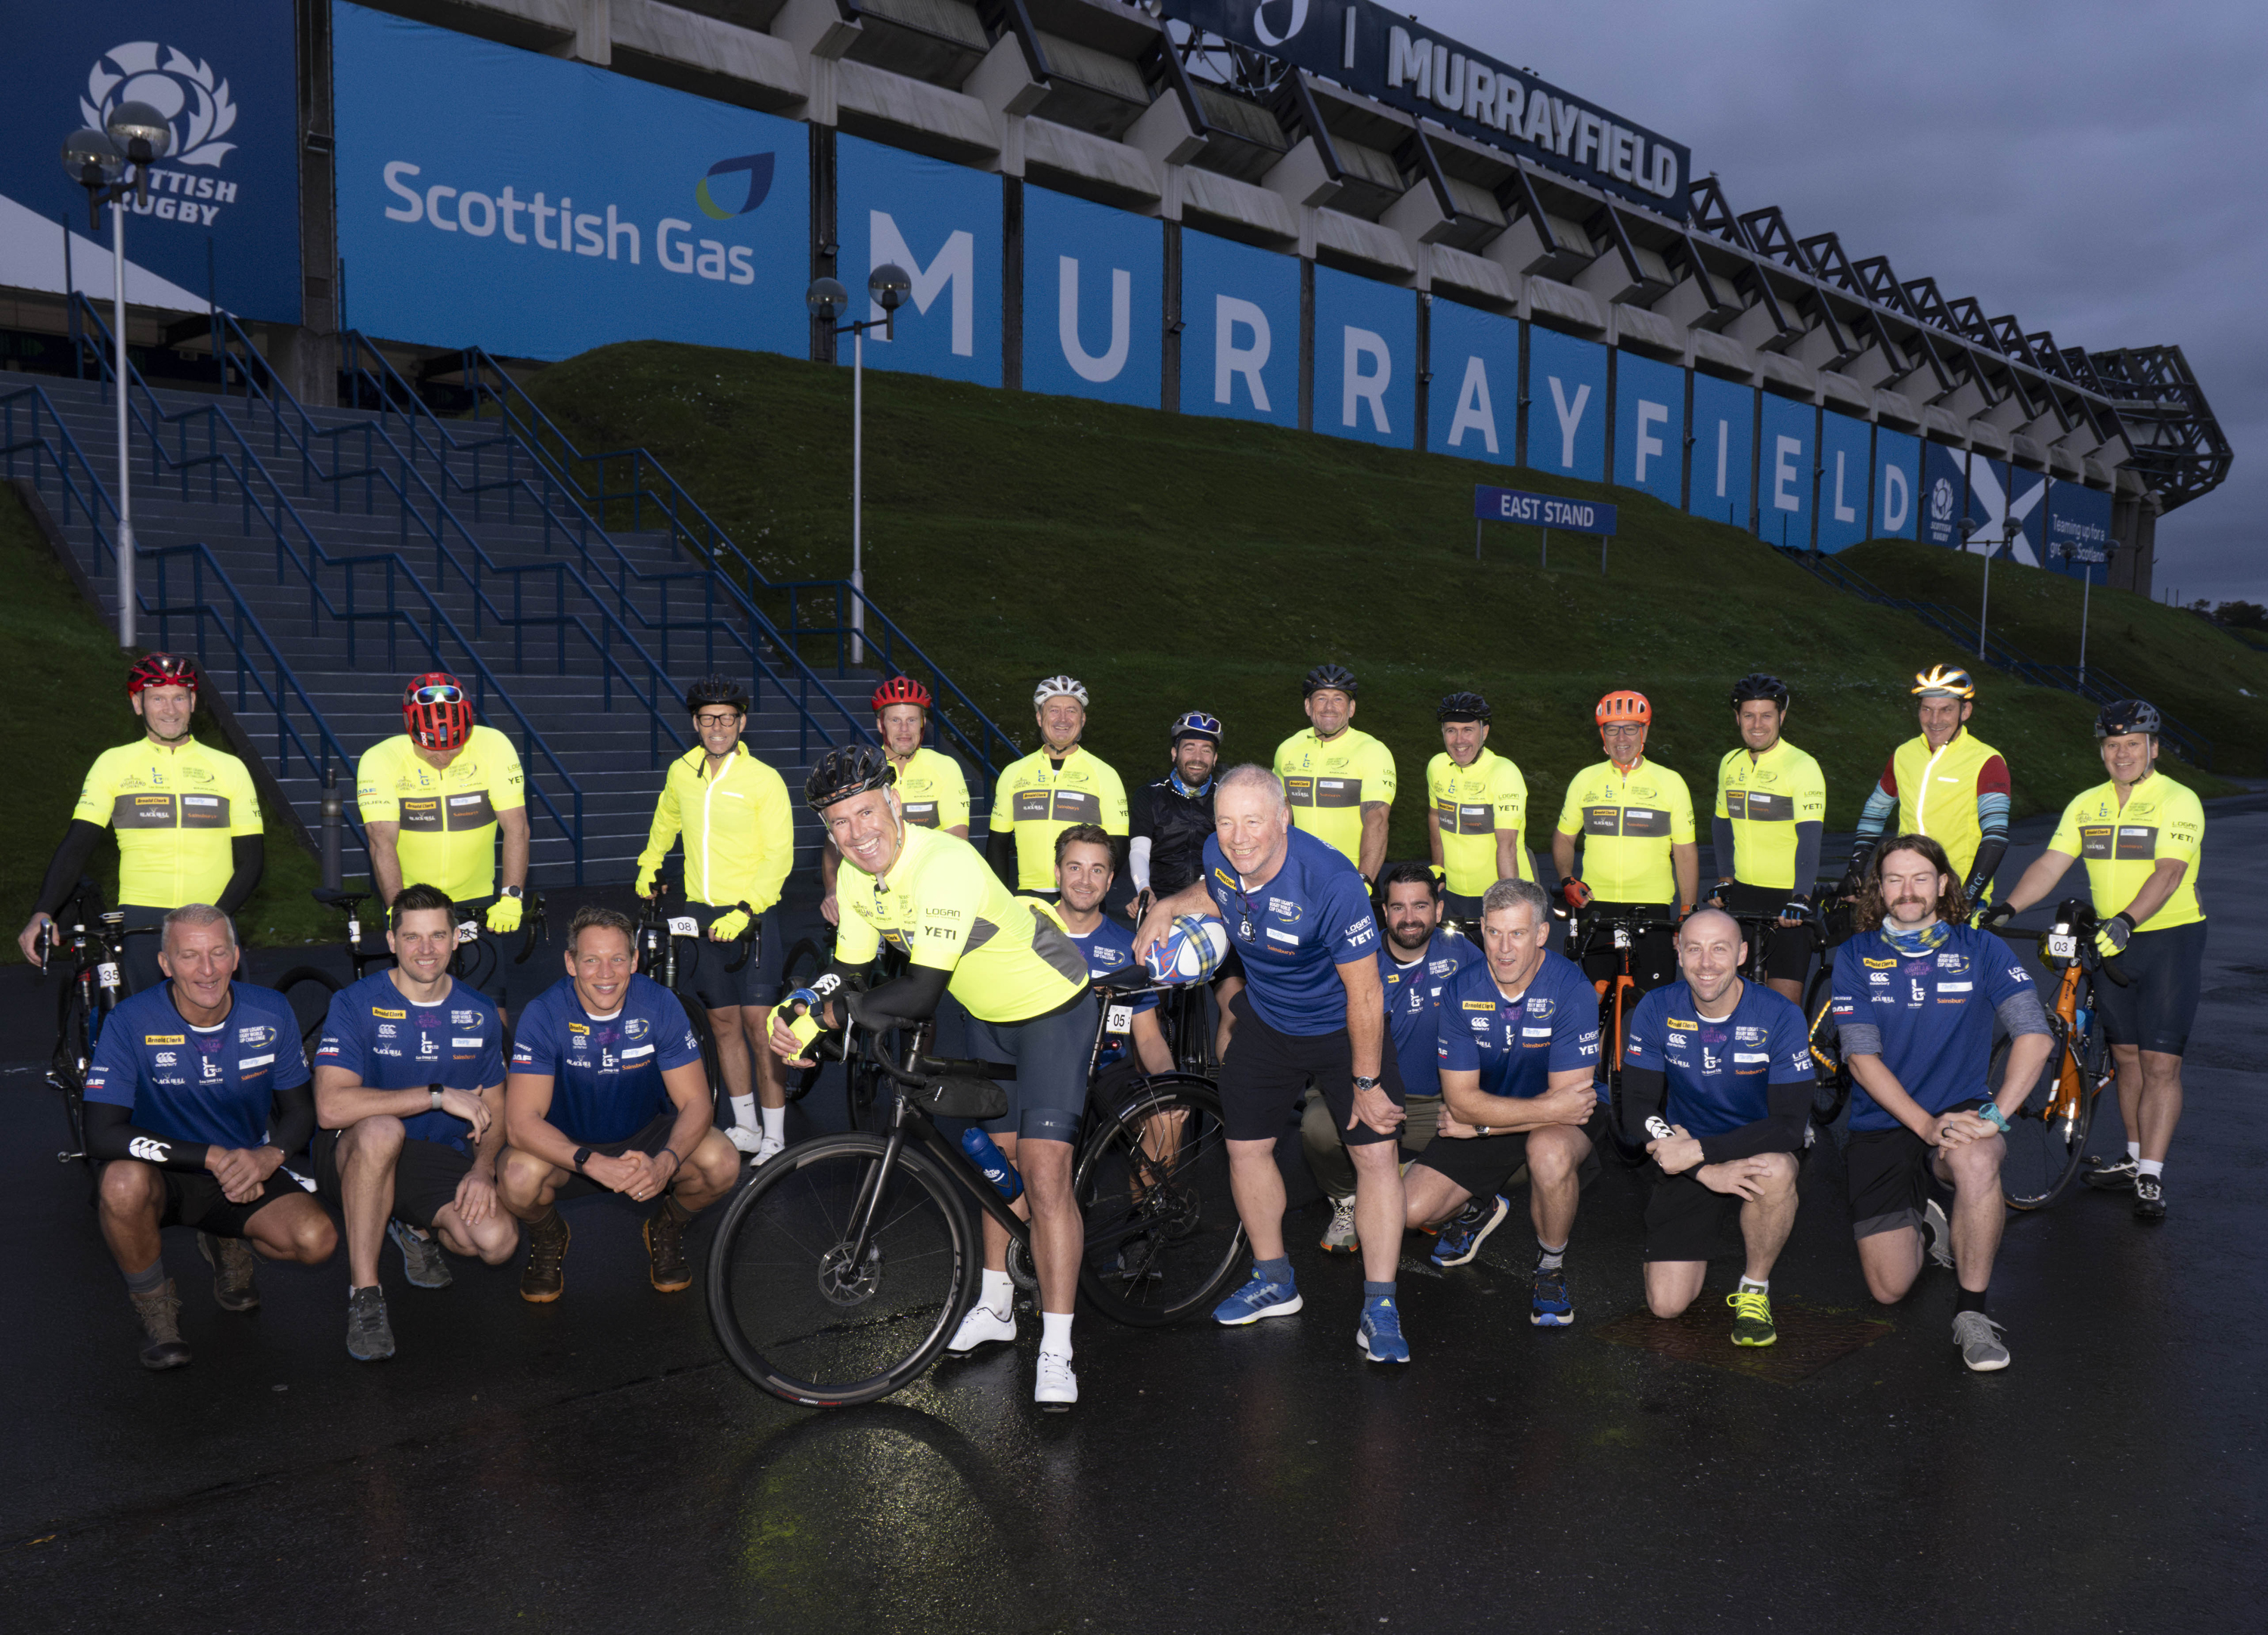 The team set off from Murrayfield in Edinburgh last weekend.